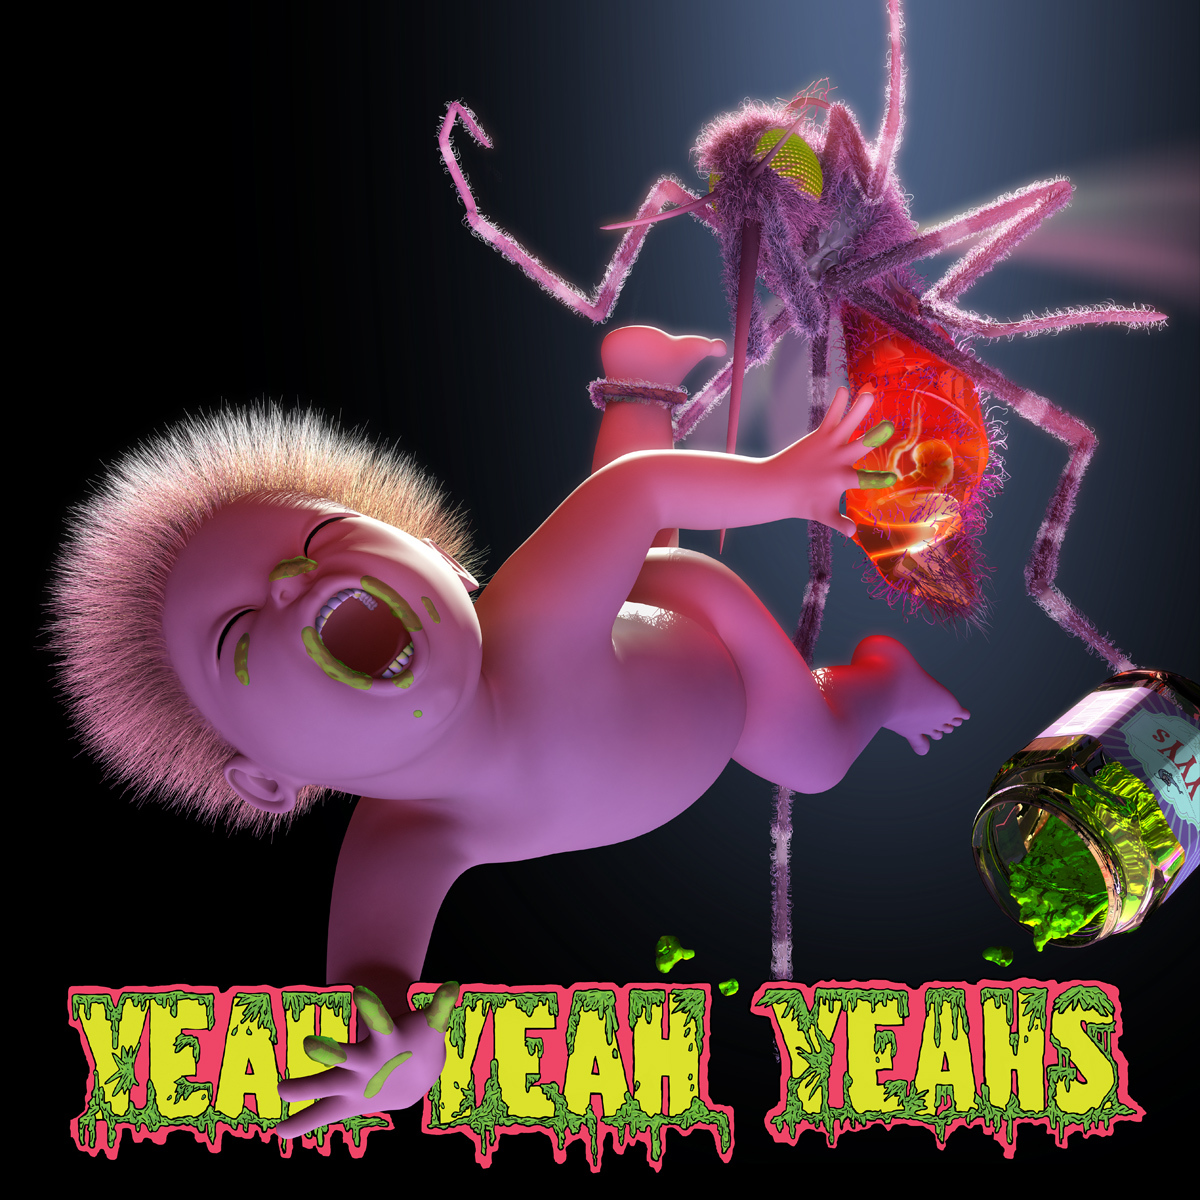 The Yeah Yeah Yeahs' latest album, Mosquito.